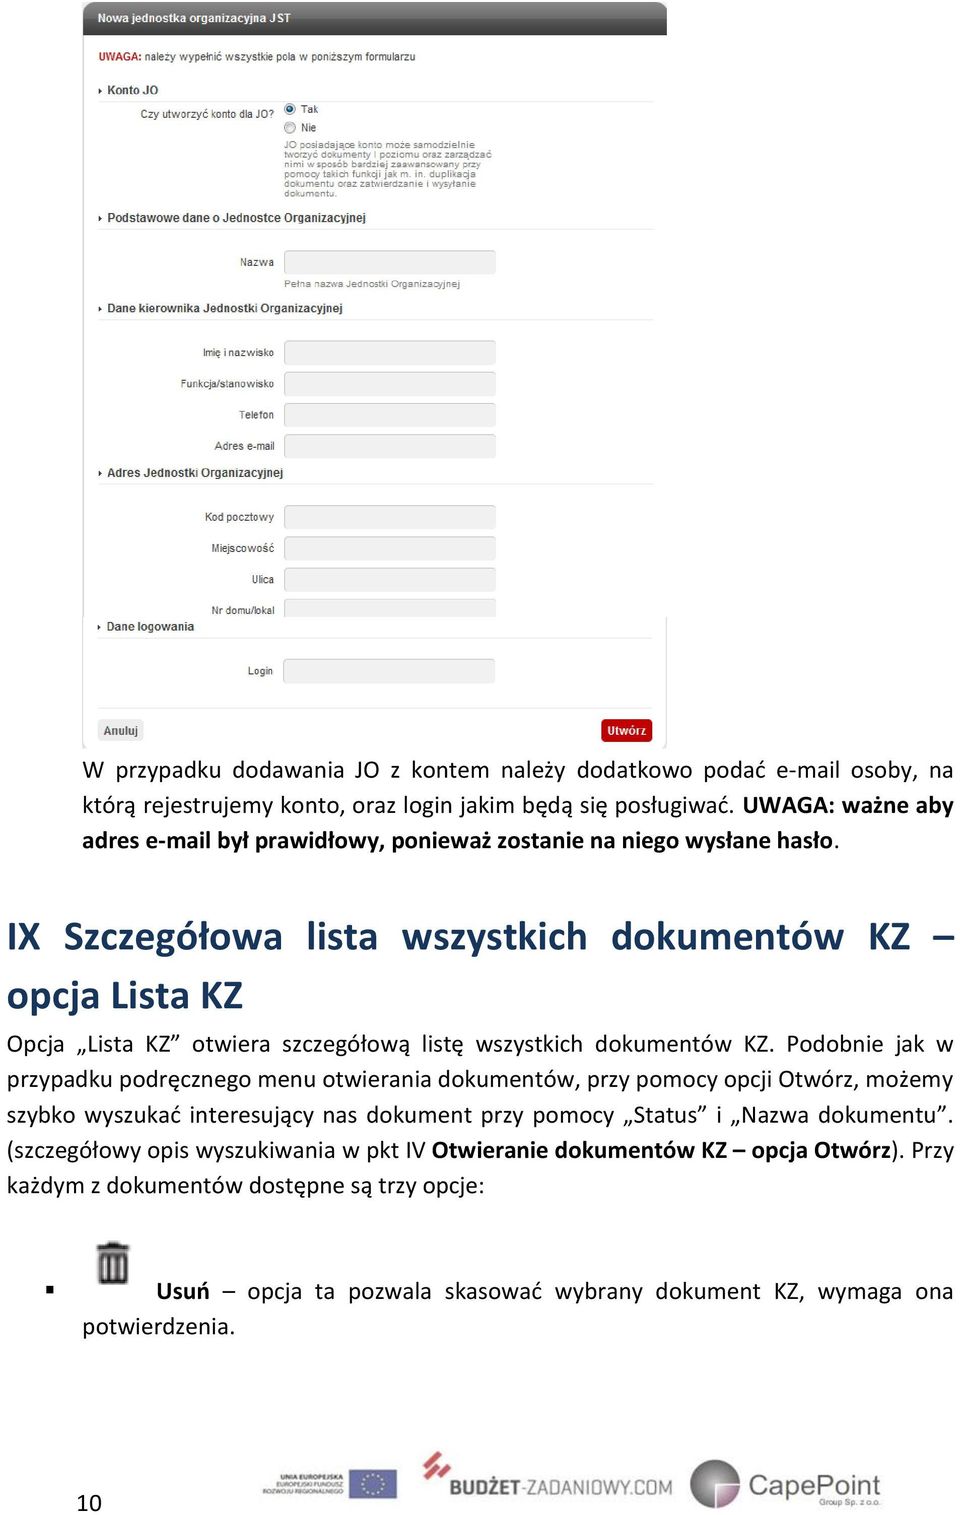 IX Szczegółowa lista wszystkich dokumentów KZ opcja Lista KZ Opcja Lista KZ otwiera szczegółową listę wszystkich dokumentów KZ.